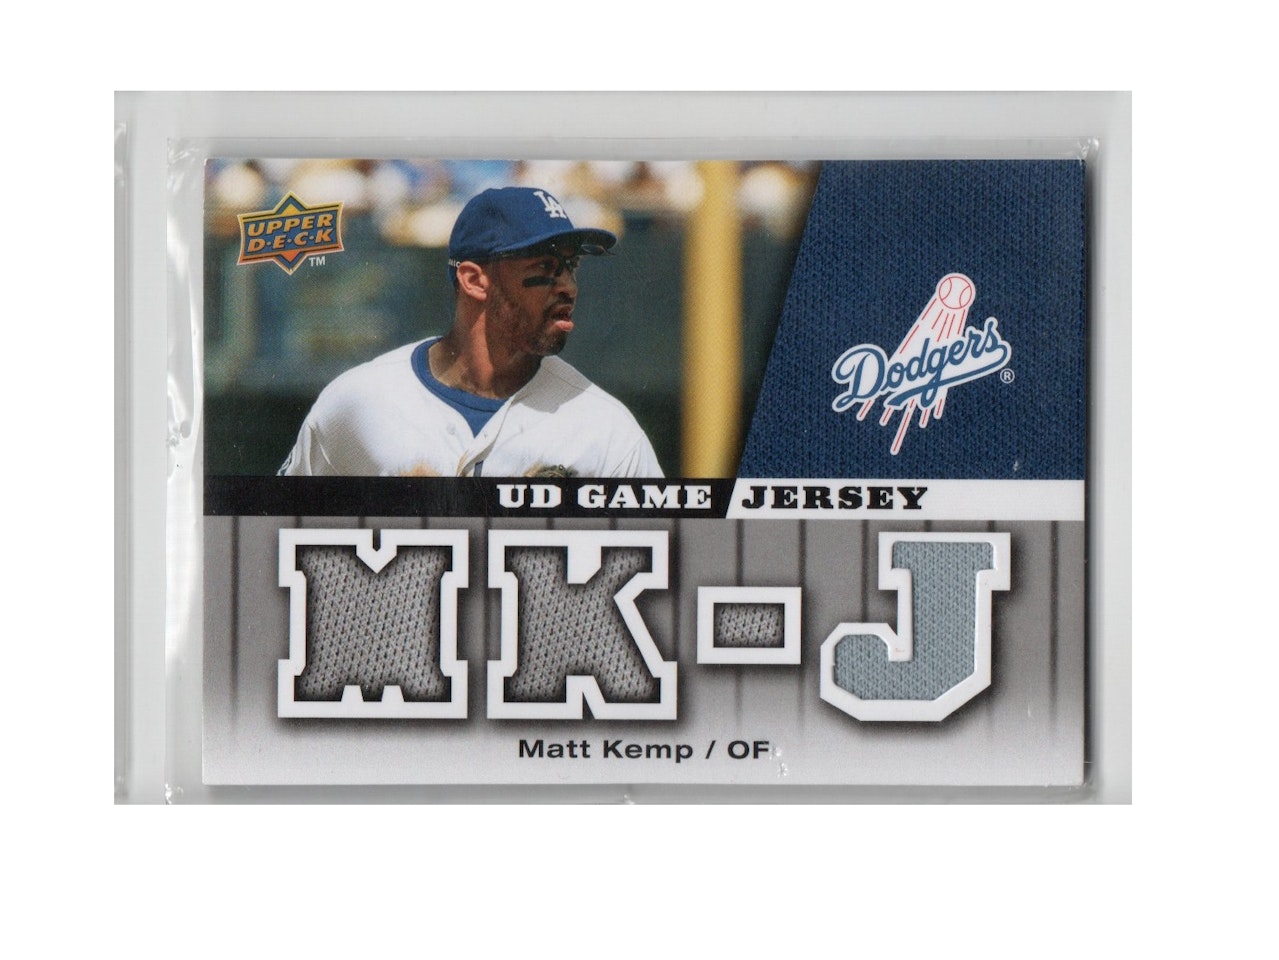 2009 Upper Deck UD Game Jersey #GJMK Matt Kemp (30-X251-MLBDODGERS)